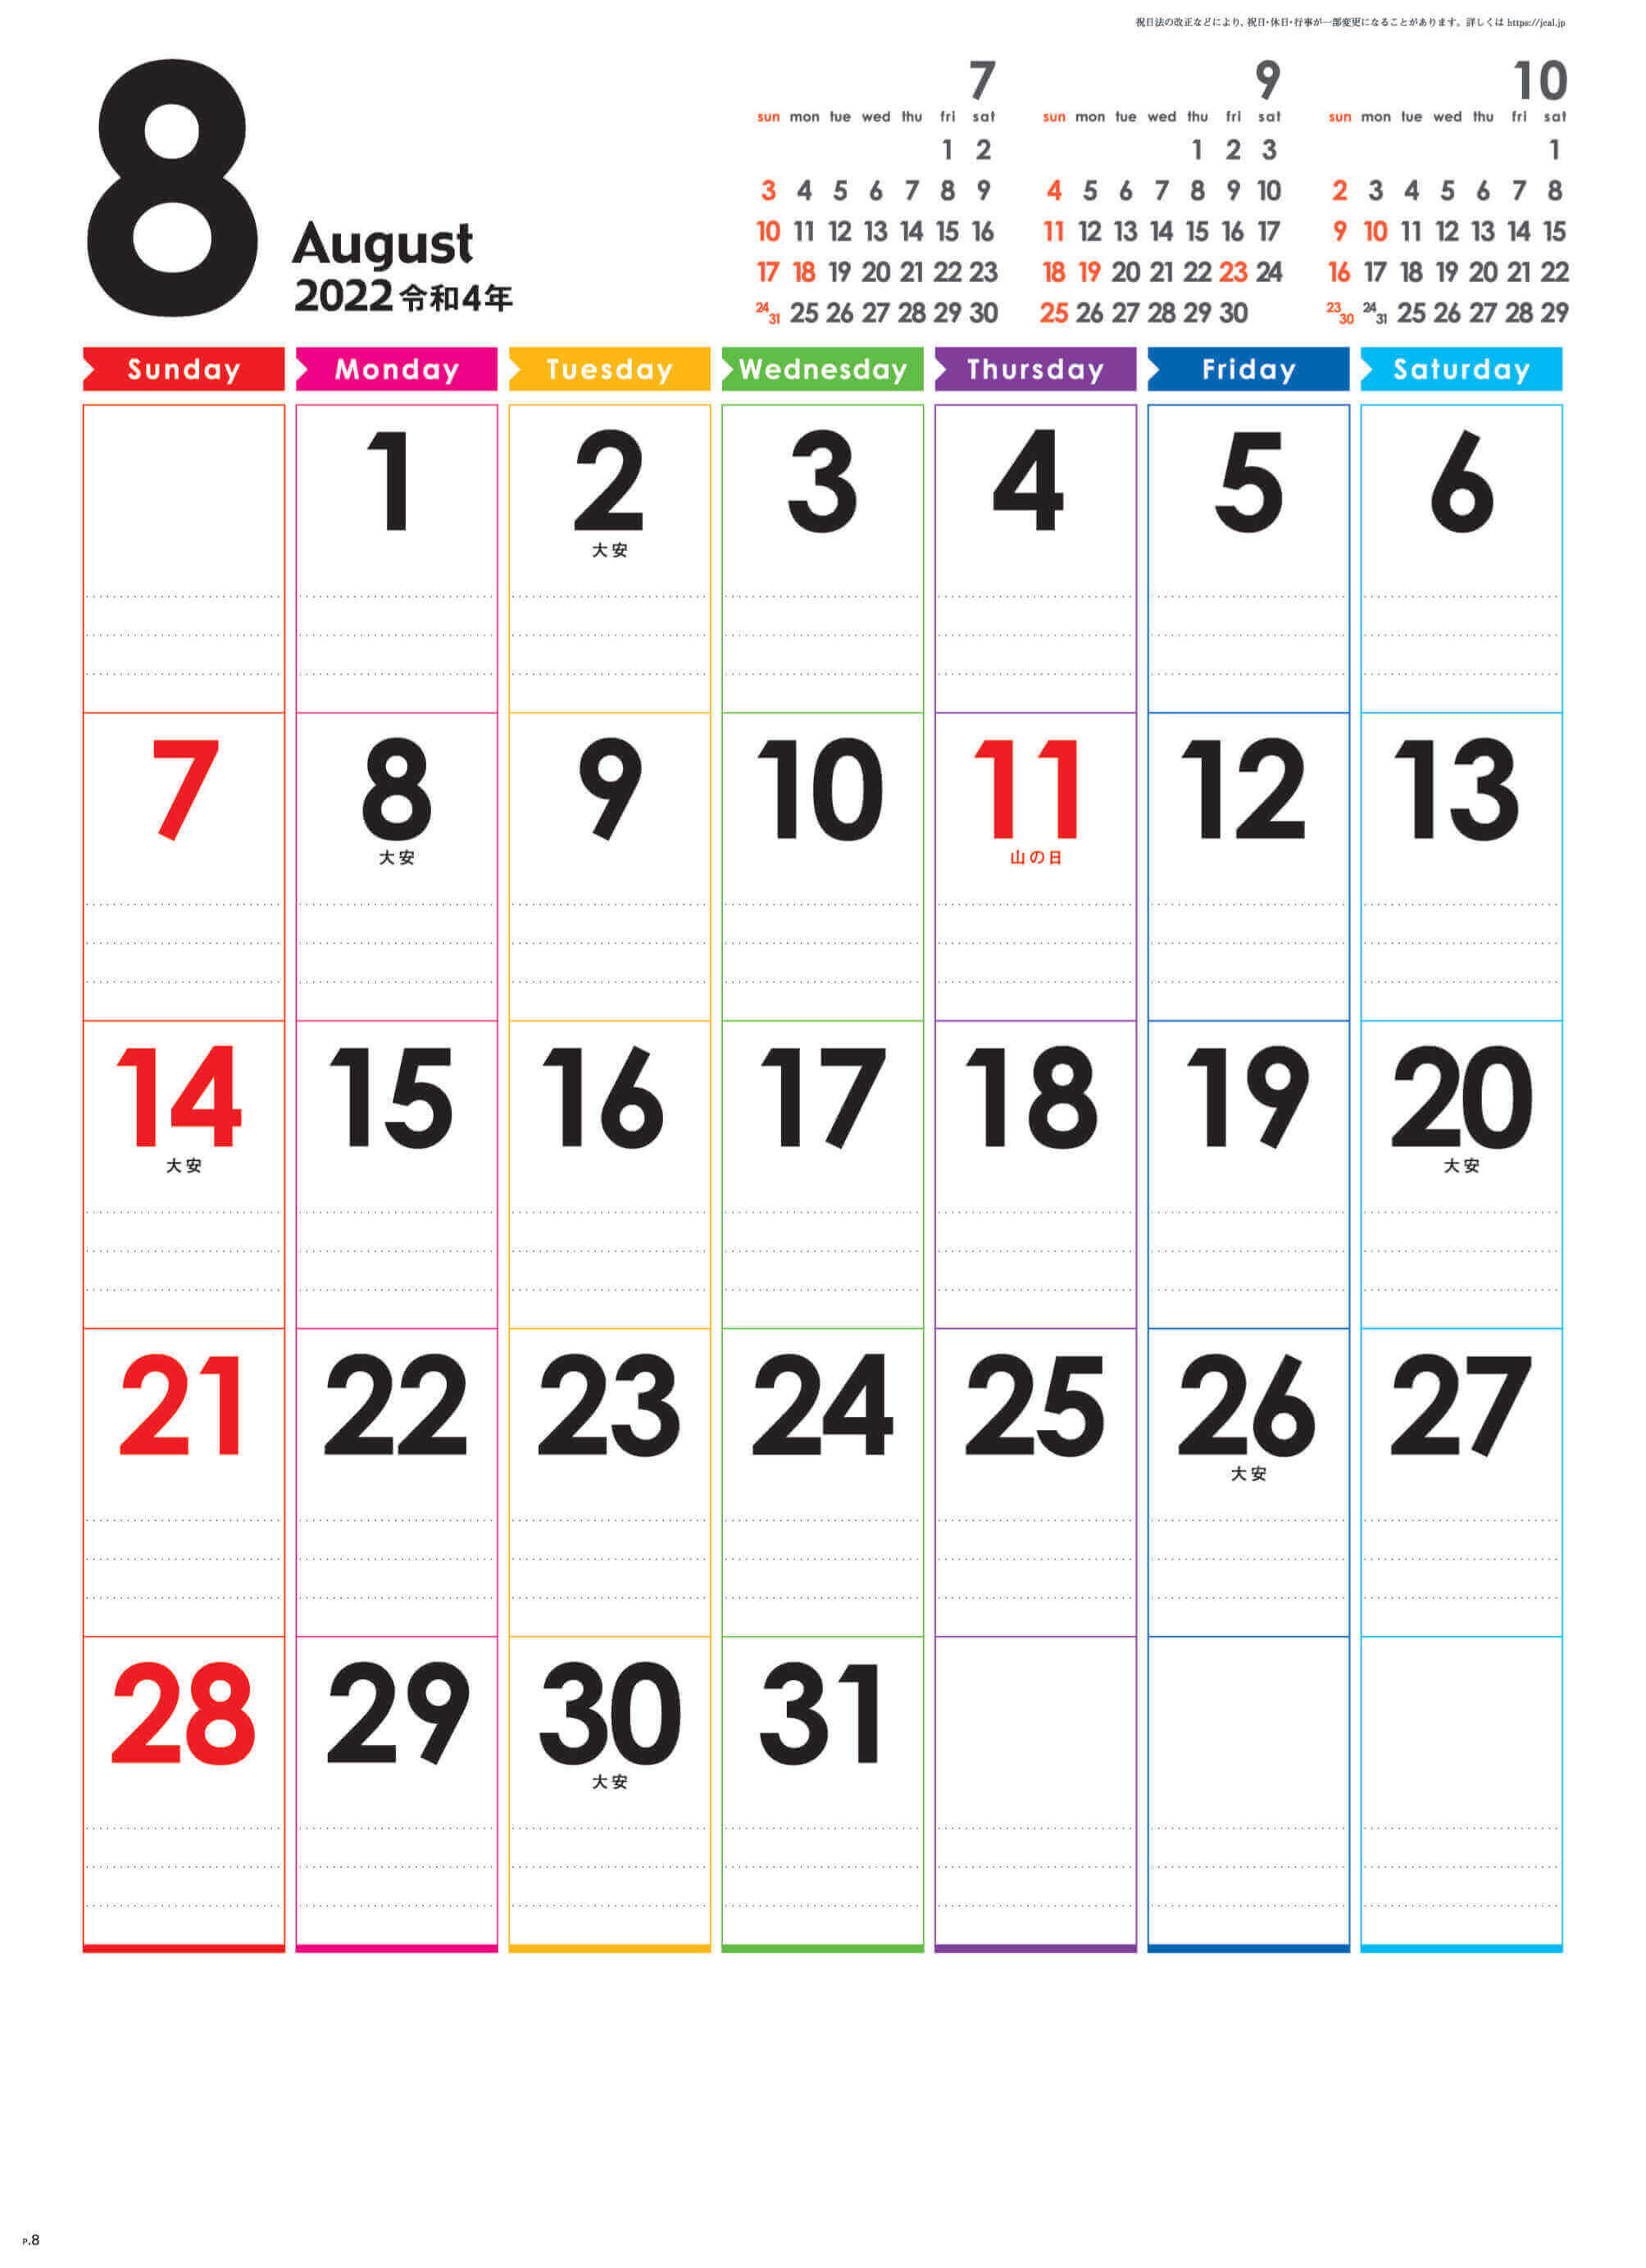  レインボーカレンダー 2022年カレンダーの画像